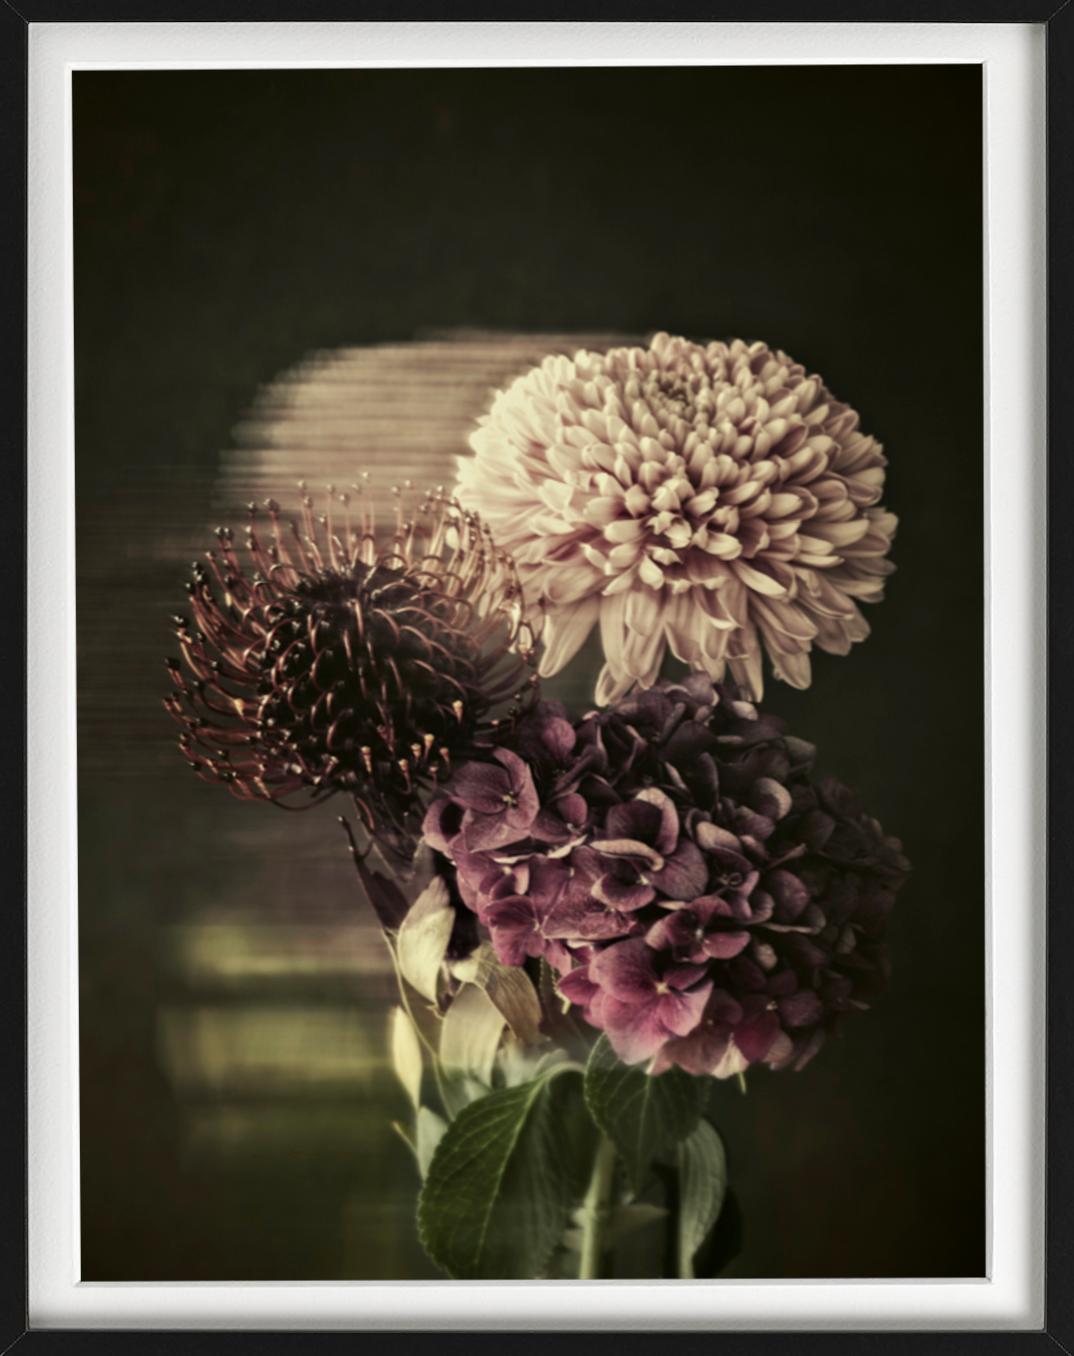 Fleurs - nature morte d'un bouquet de fleurs dans des couleurs sombres et terreuses - Photograph de Tina Trumpp